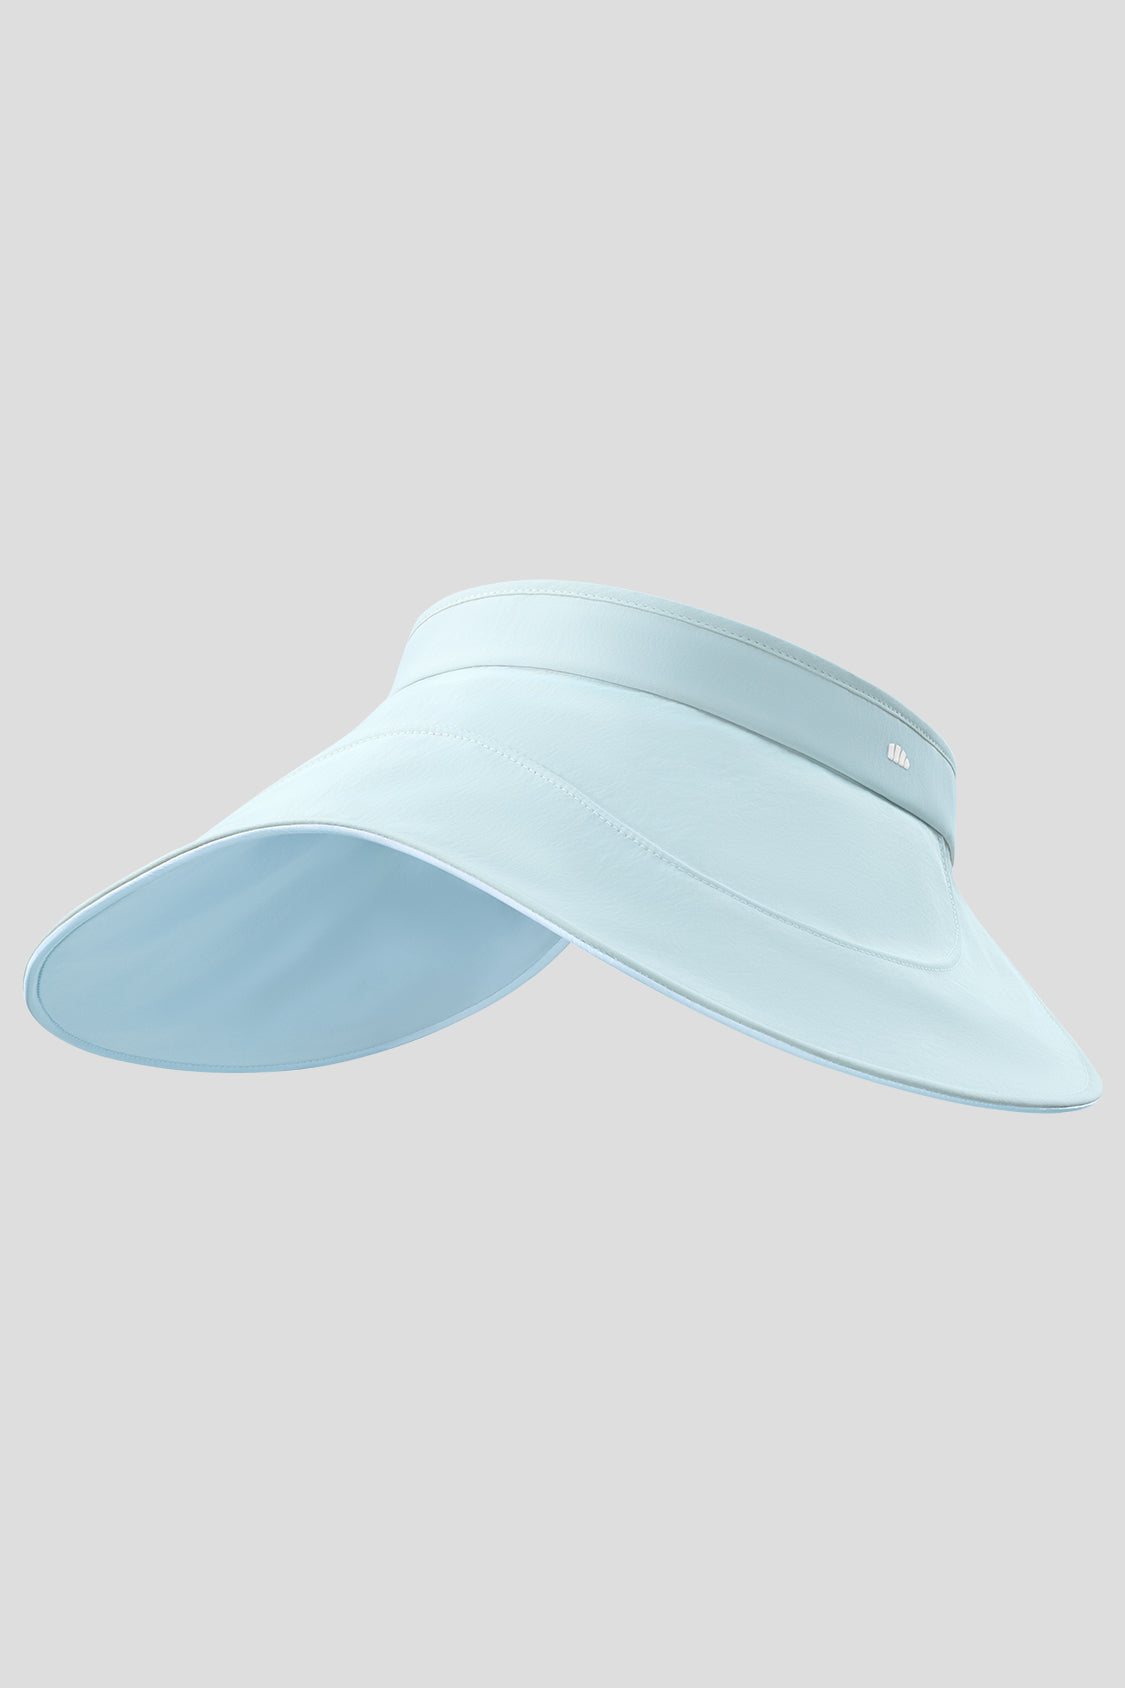 Beneunder Golf Sun Hats, UV Protection Hat for Women UPF50+